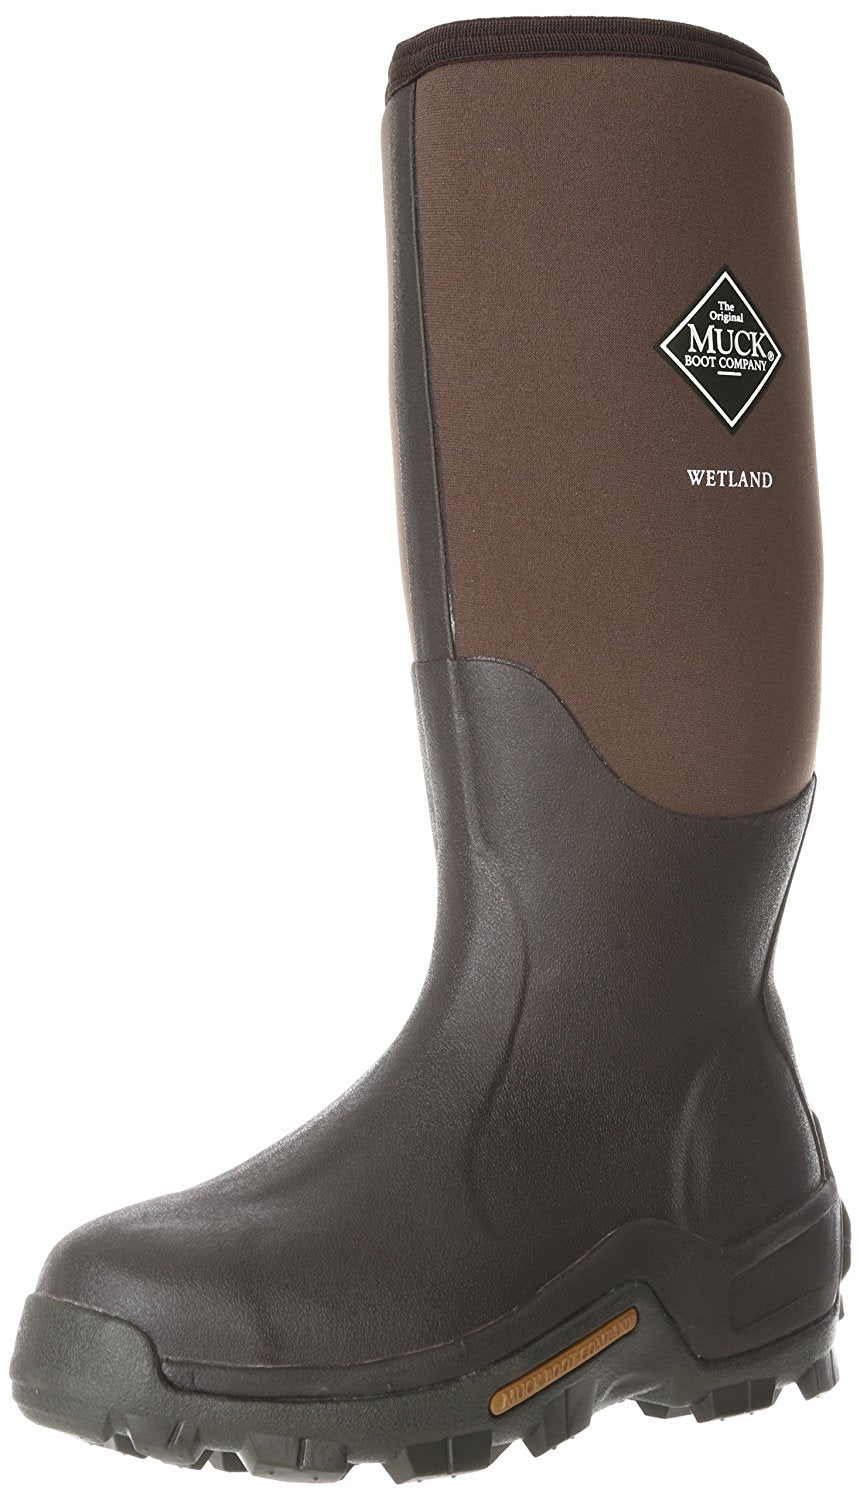 The Original Muck Boot WET998K-8 Wetland Men's Boots, 8, Brown